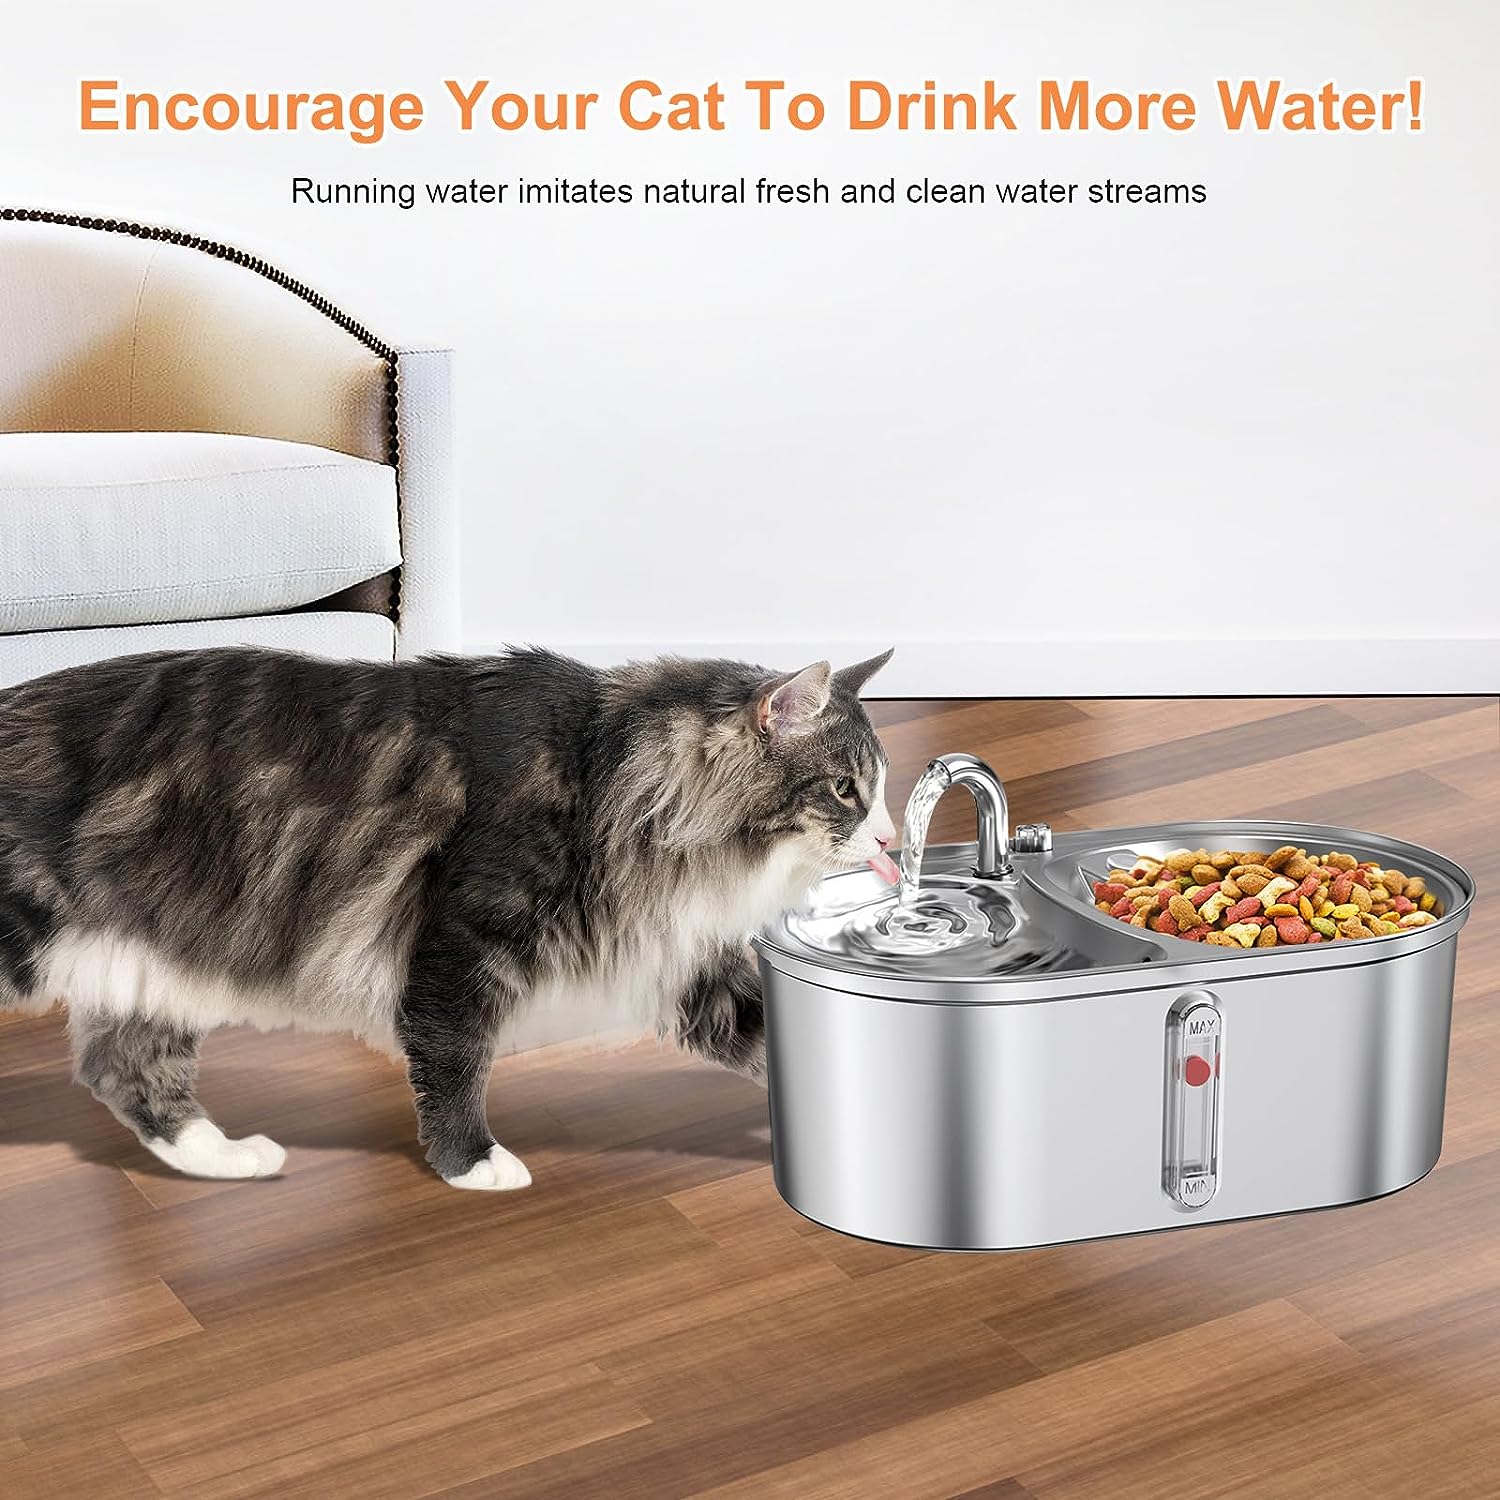 آبخوری فواره ای گربه و سگ 2 در1 ( آب و غذا ) برند: keywords کد : F 132